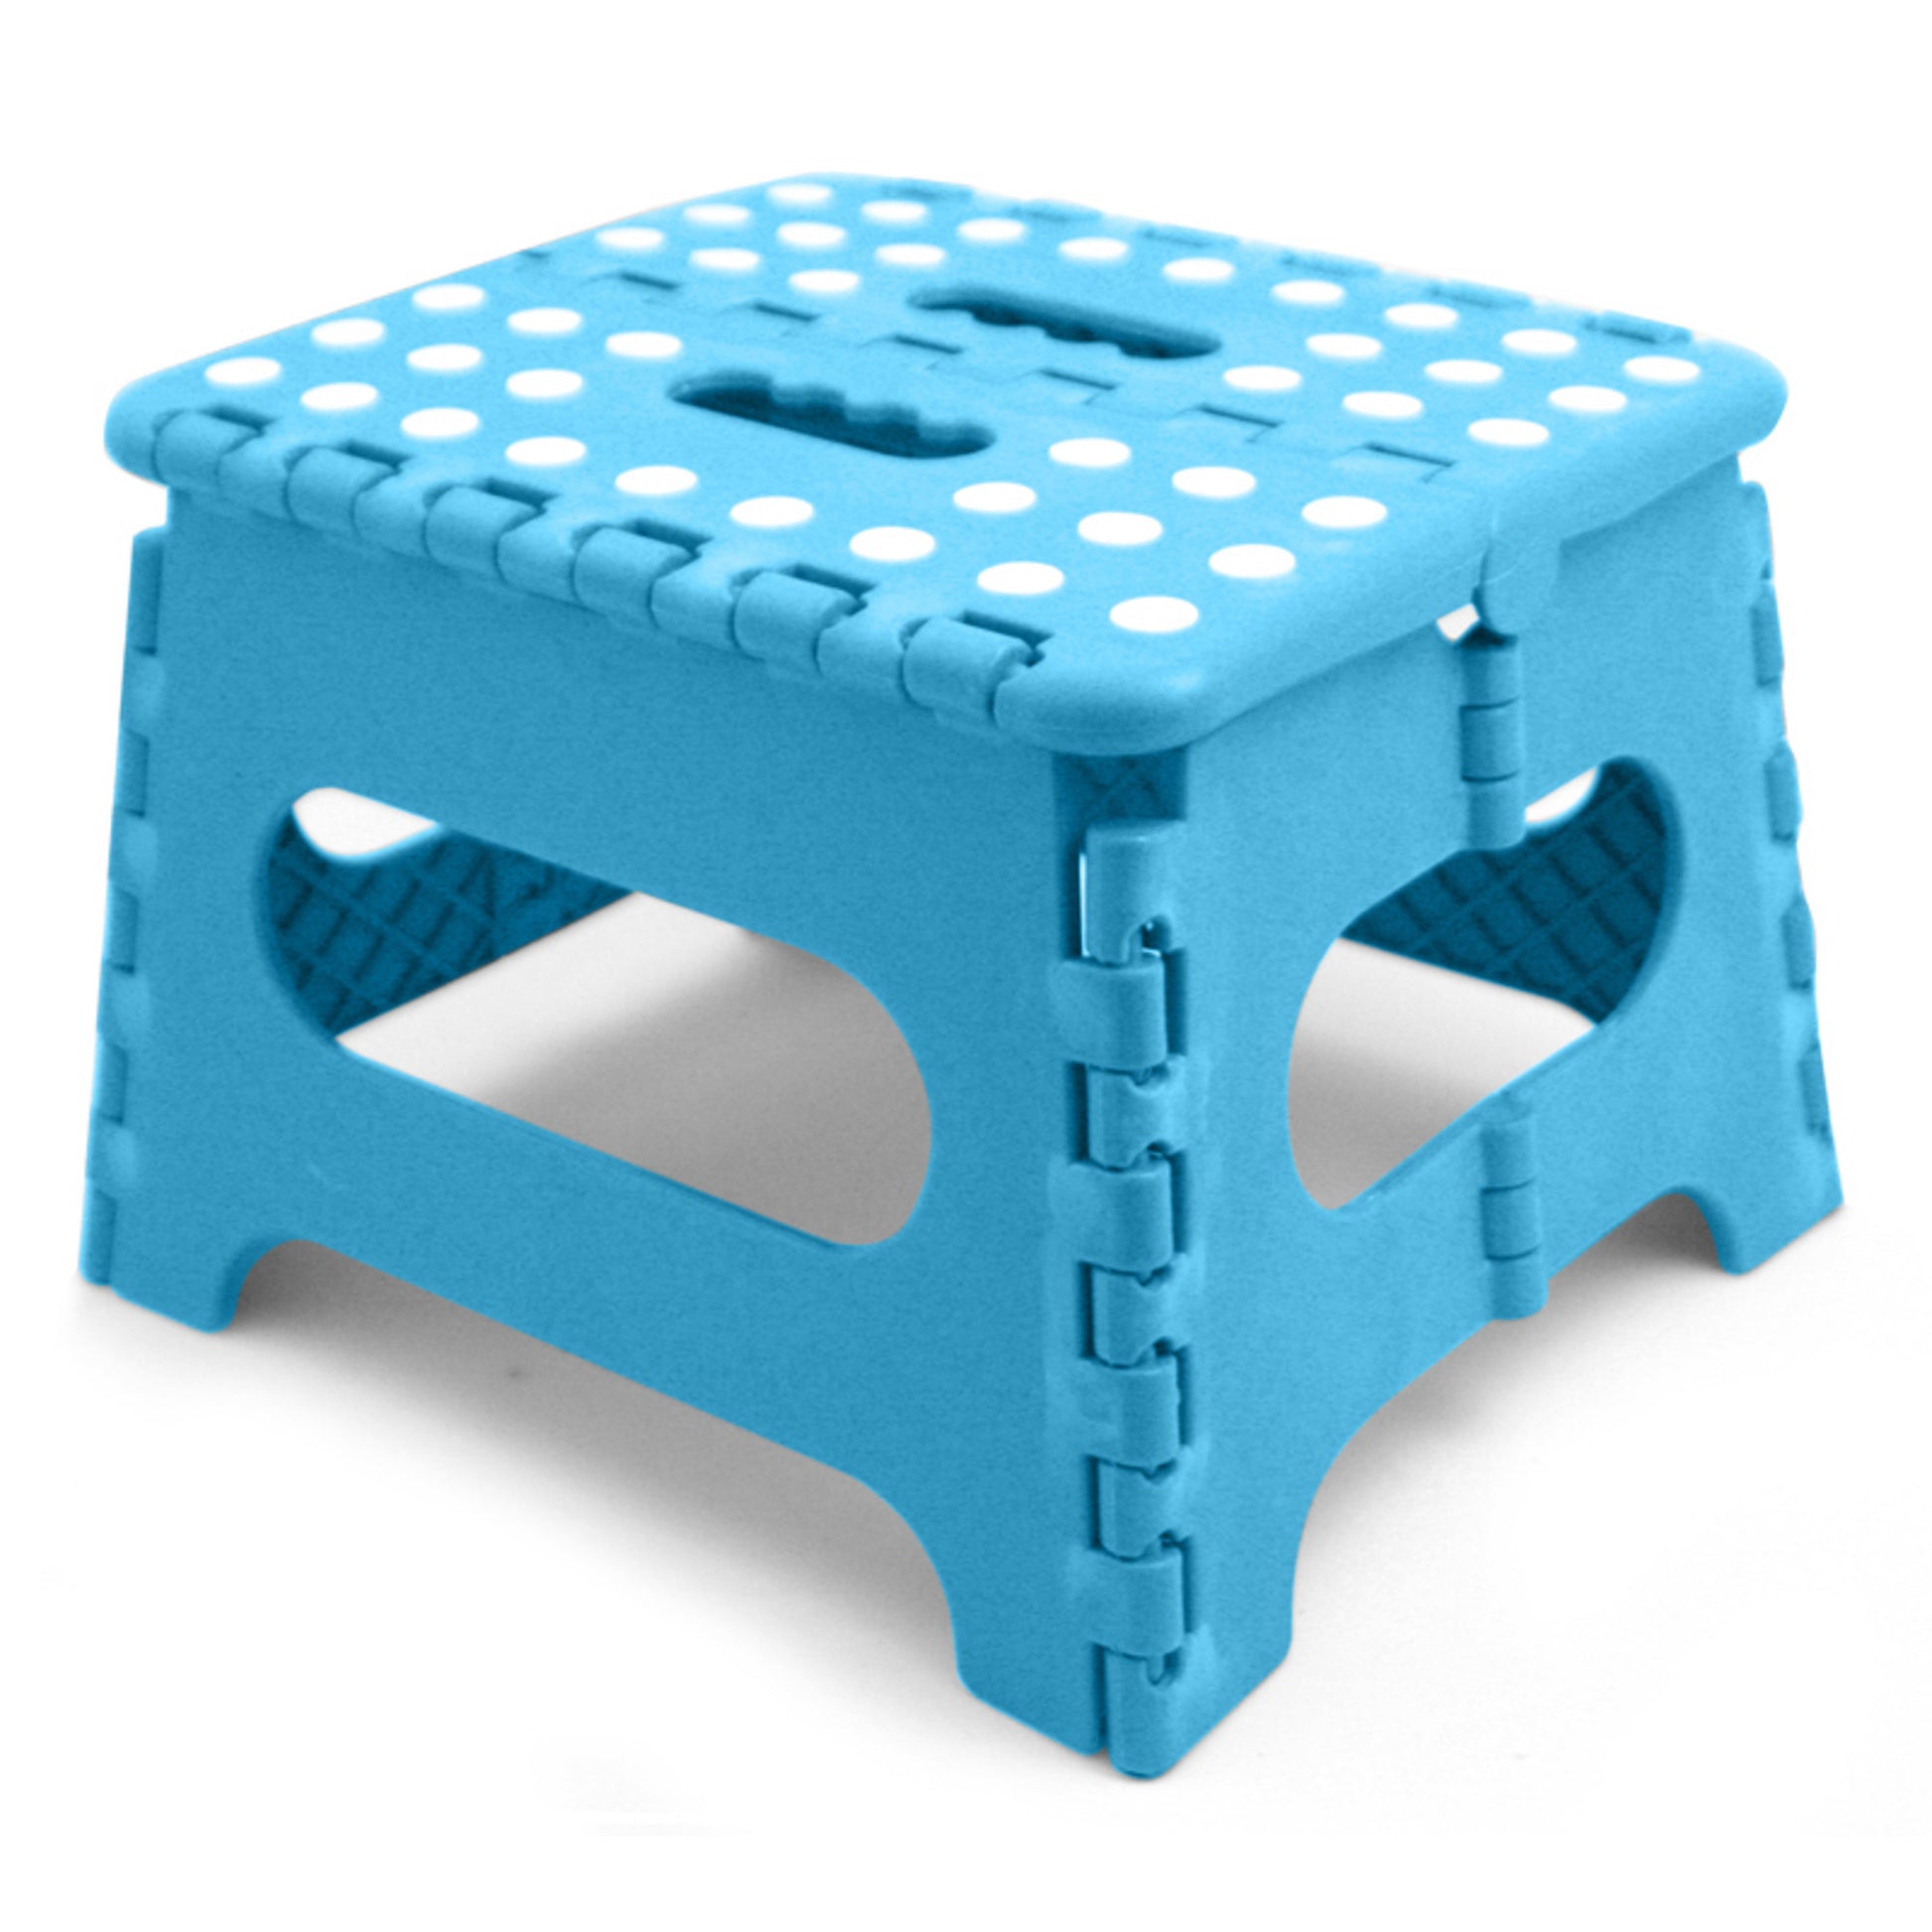 Home Basics Medium Plastic Folding Stool with Non-Slip Dots, Turquoise - Turquoise